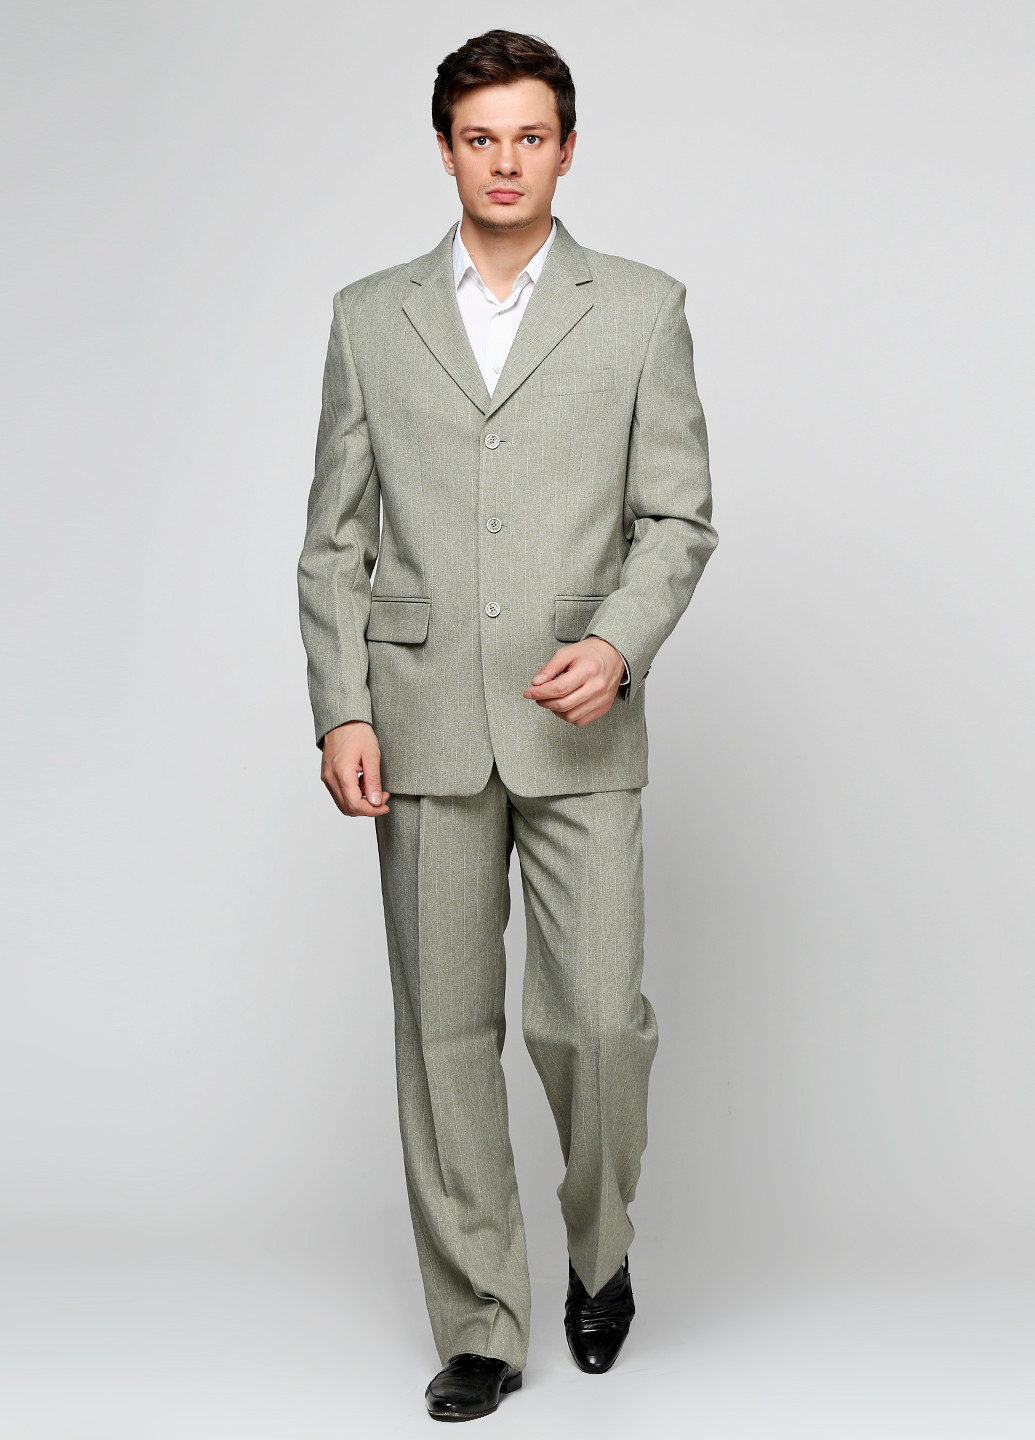 Оливковый демисезонный костюм (пиджак, брюки) брючный Galant